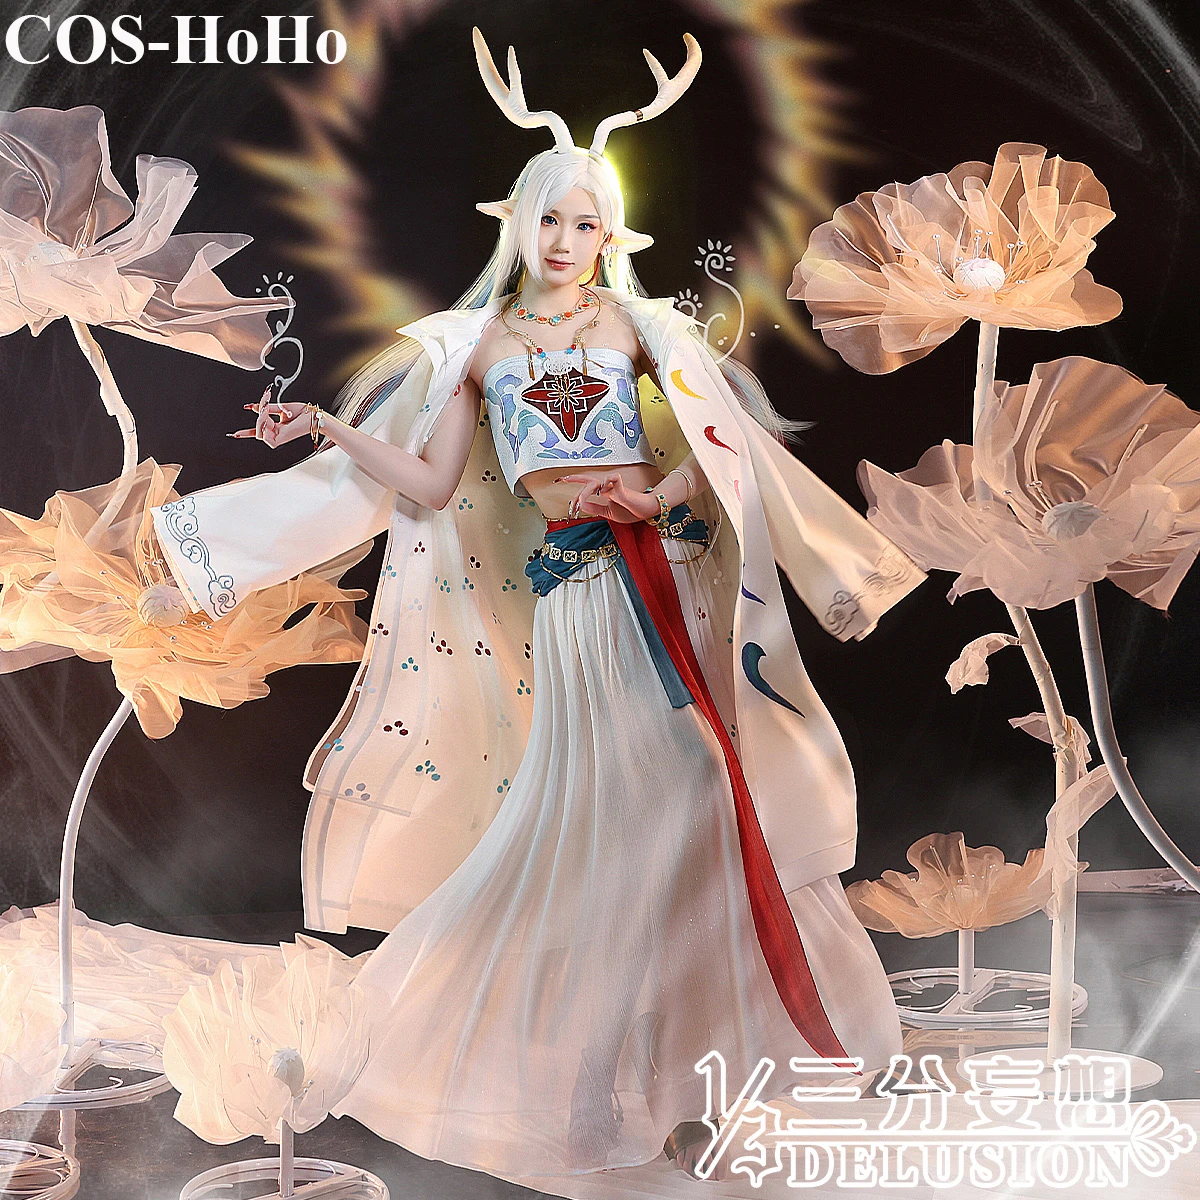 

Костюм для косплея COS-HoHo из аниме «Рыцари девять цветов» с оленем, Великолепная Античная униформа, костюм для косплея, женский костюм для вечеринки на Хэллоуин